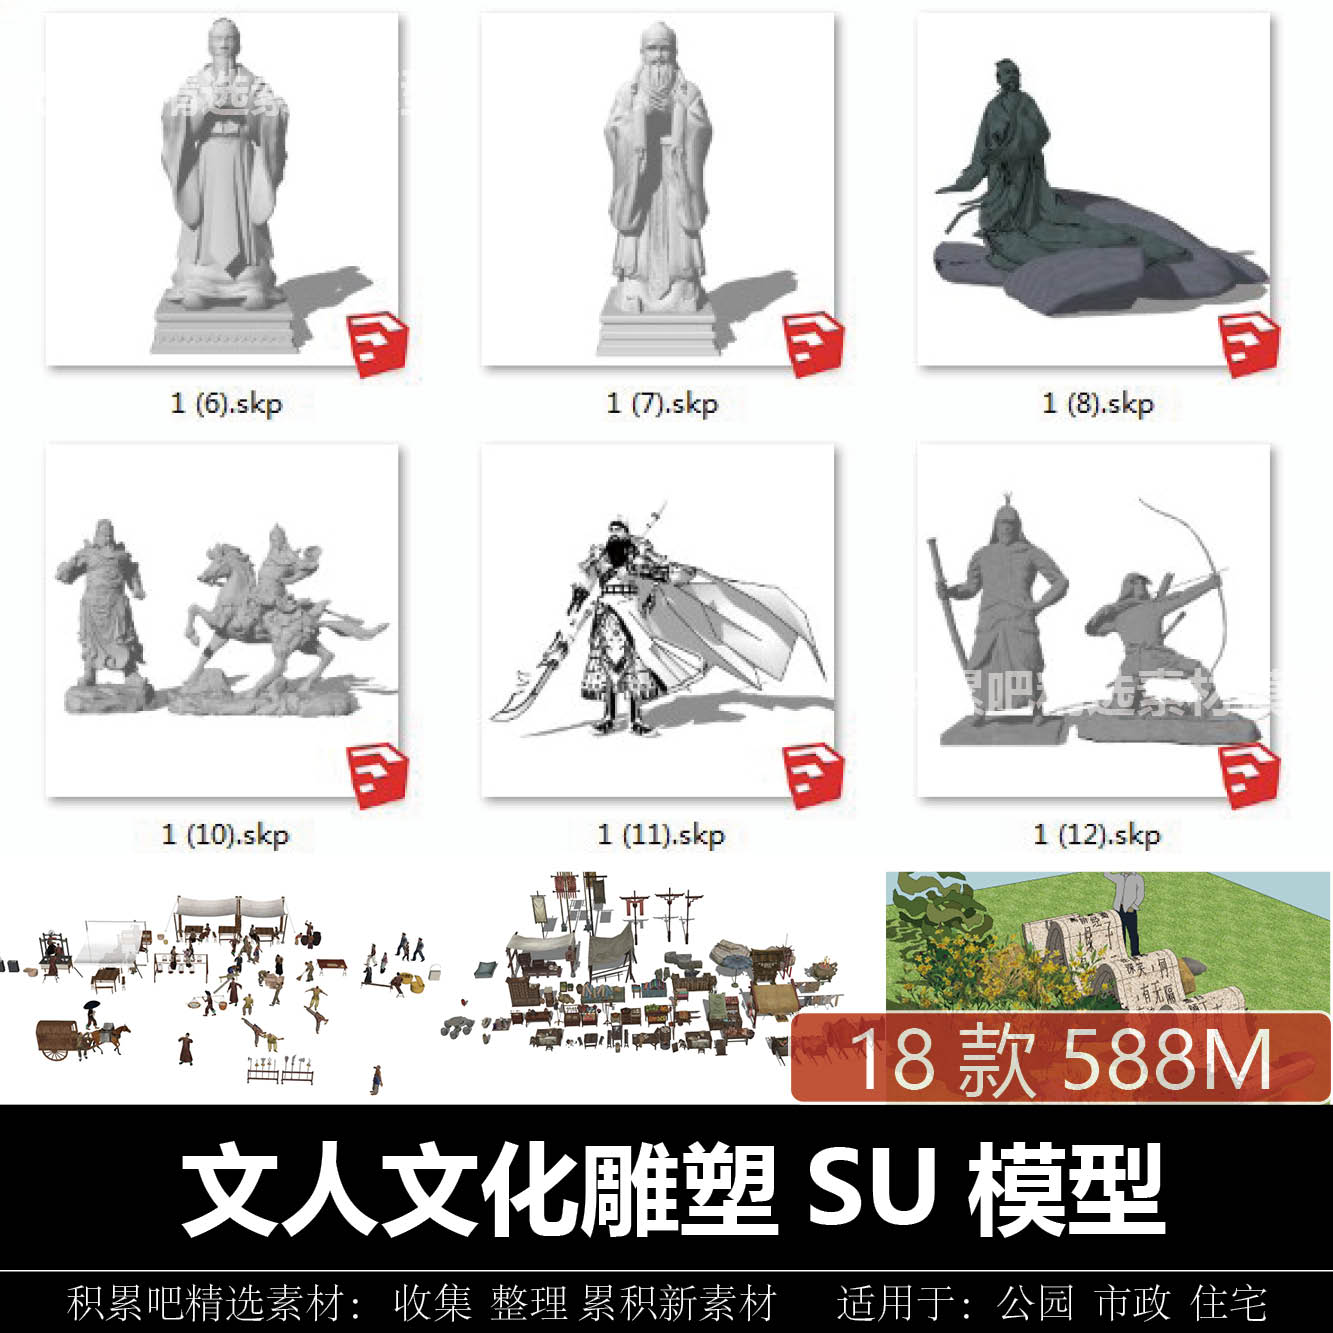 园林景观古人文人伟人将军骑马石雕雕塑公园文化主题雕塑SU模型集